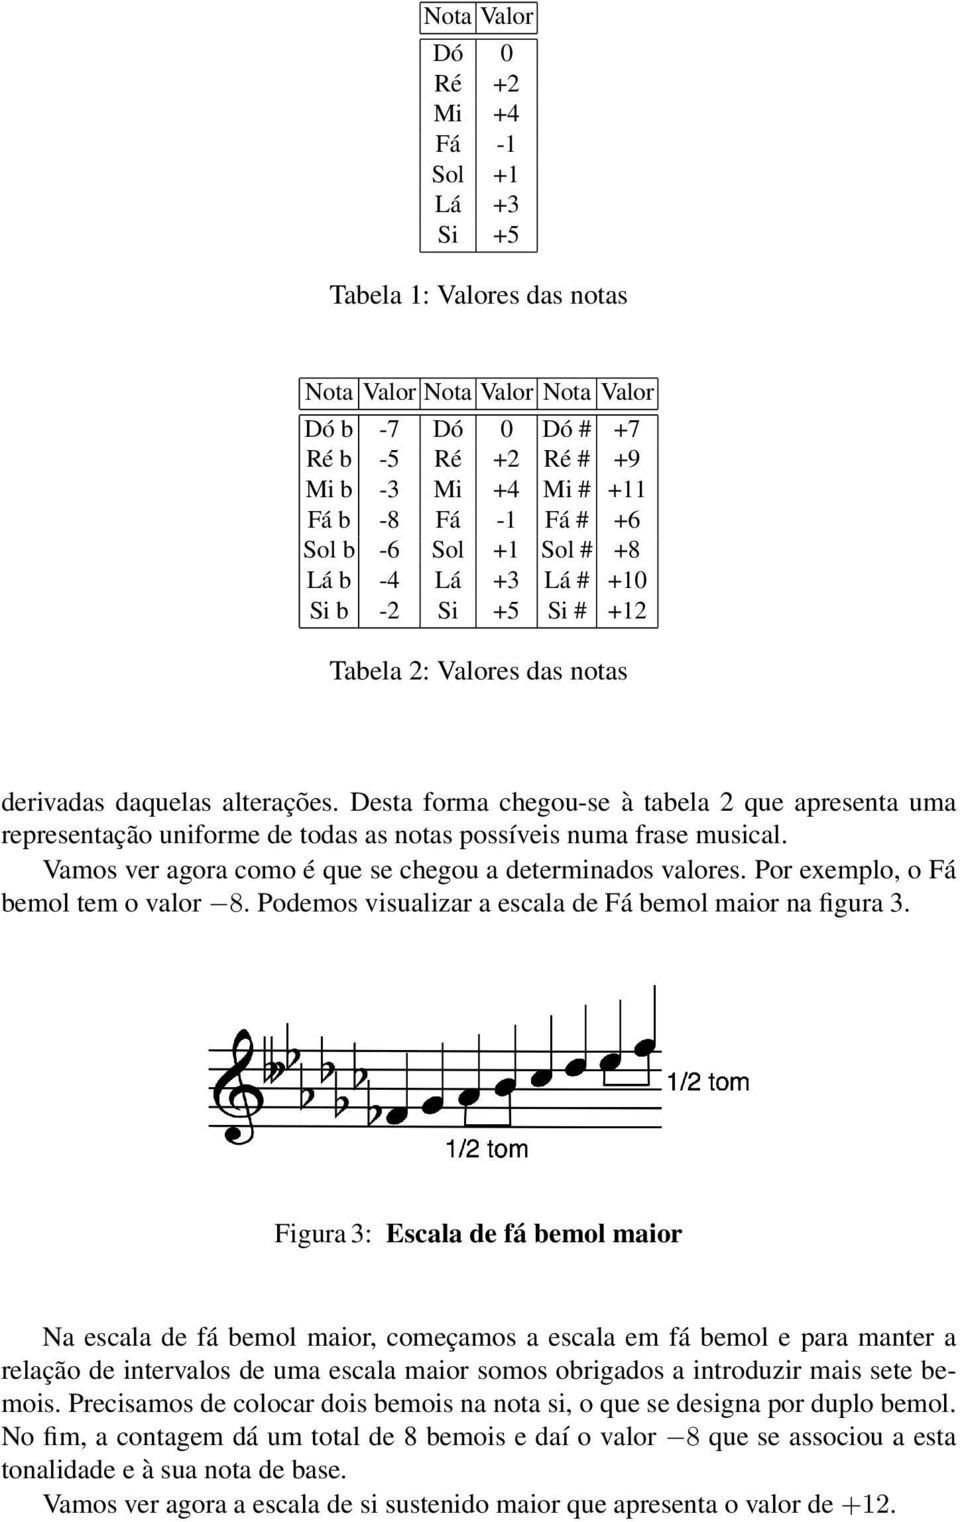 Desta forma chegou-se à tabela 2 que apresenta uma representação uniforme de todas as notas possíveis numa frase musical. Vamos ver agora como é que se chegou a determinados valores.